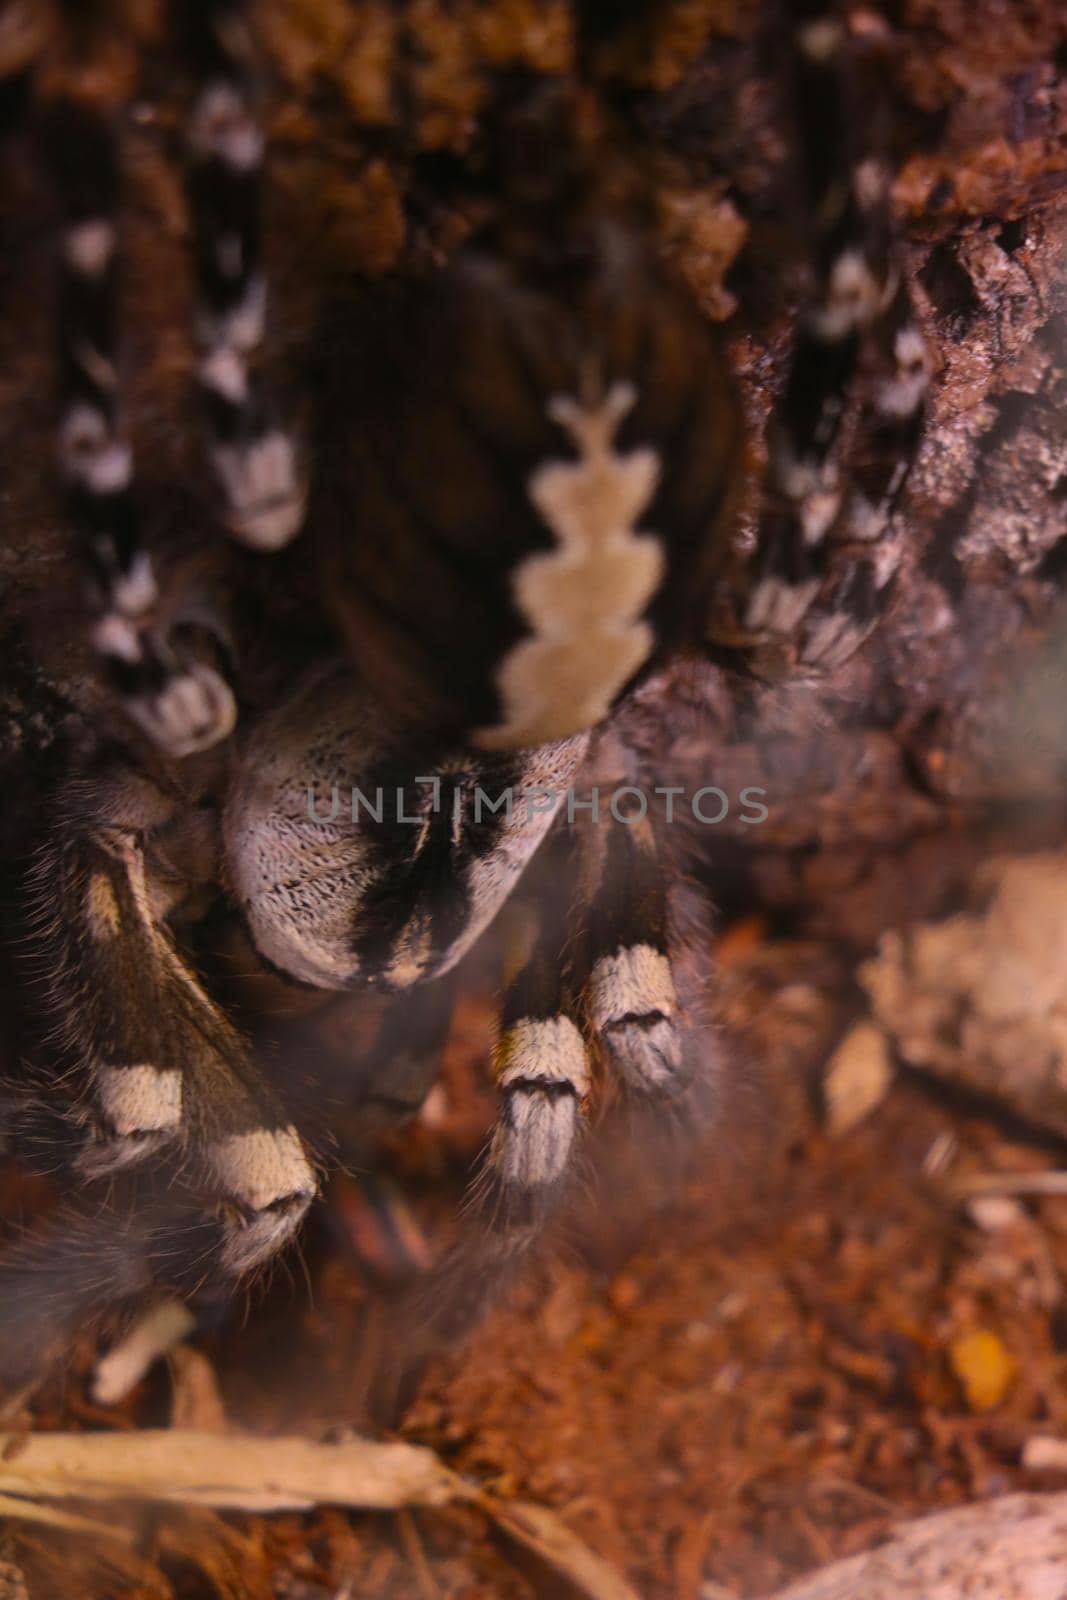 Selective focus. View of a large venomous spider